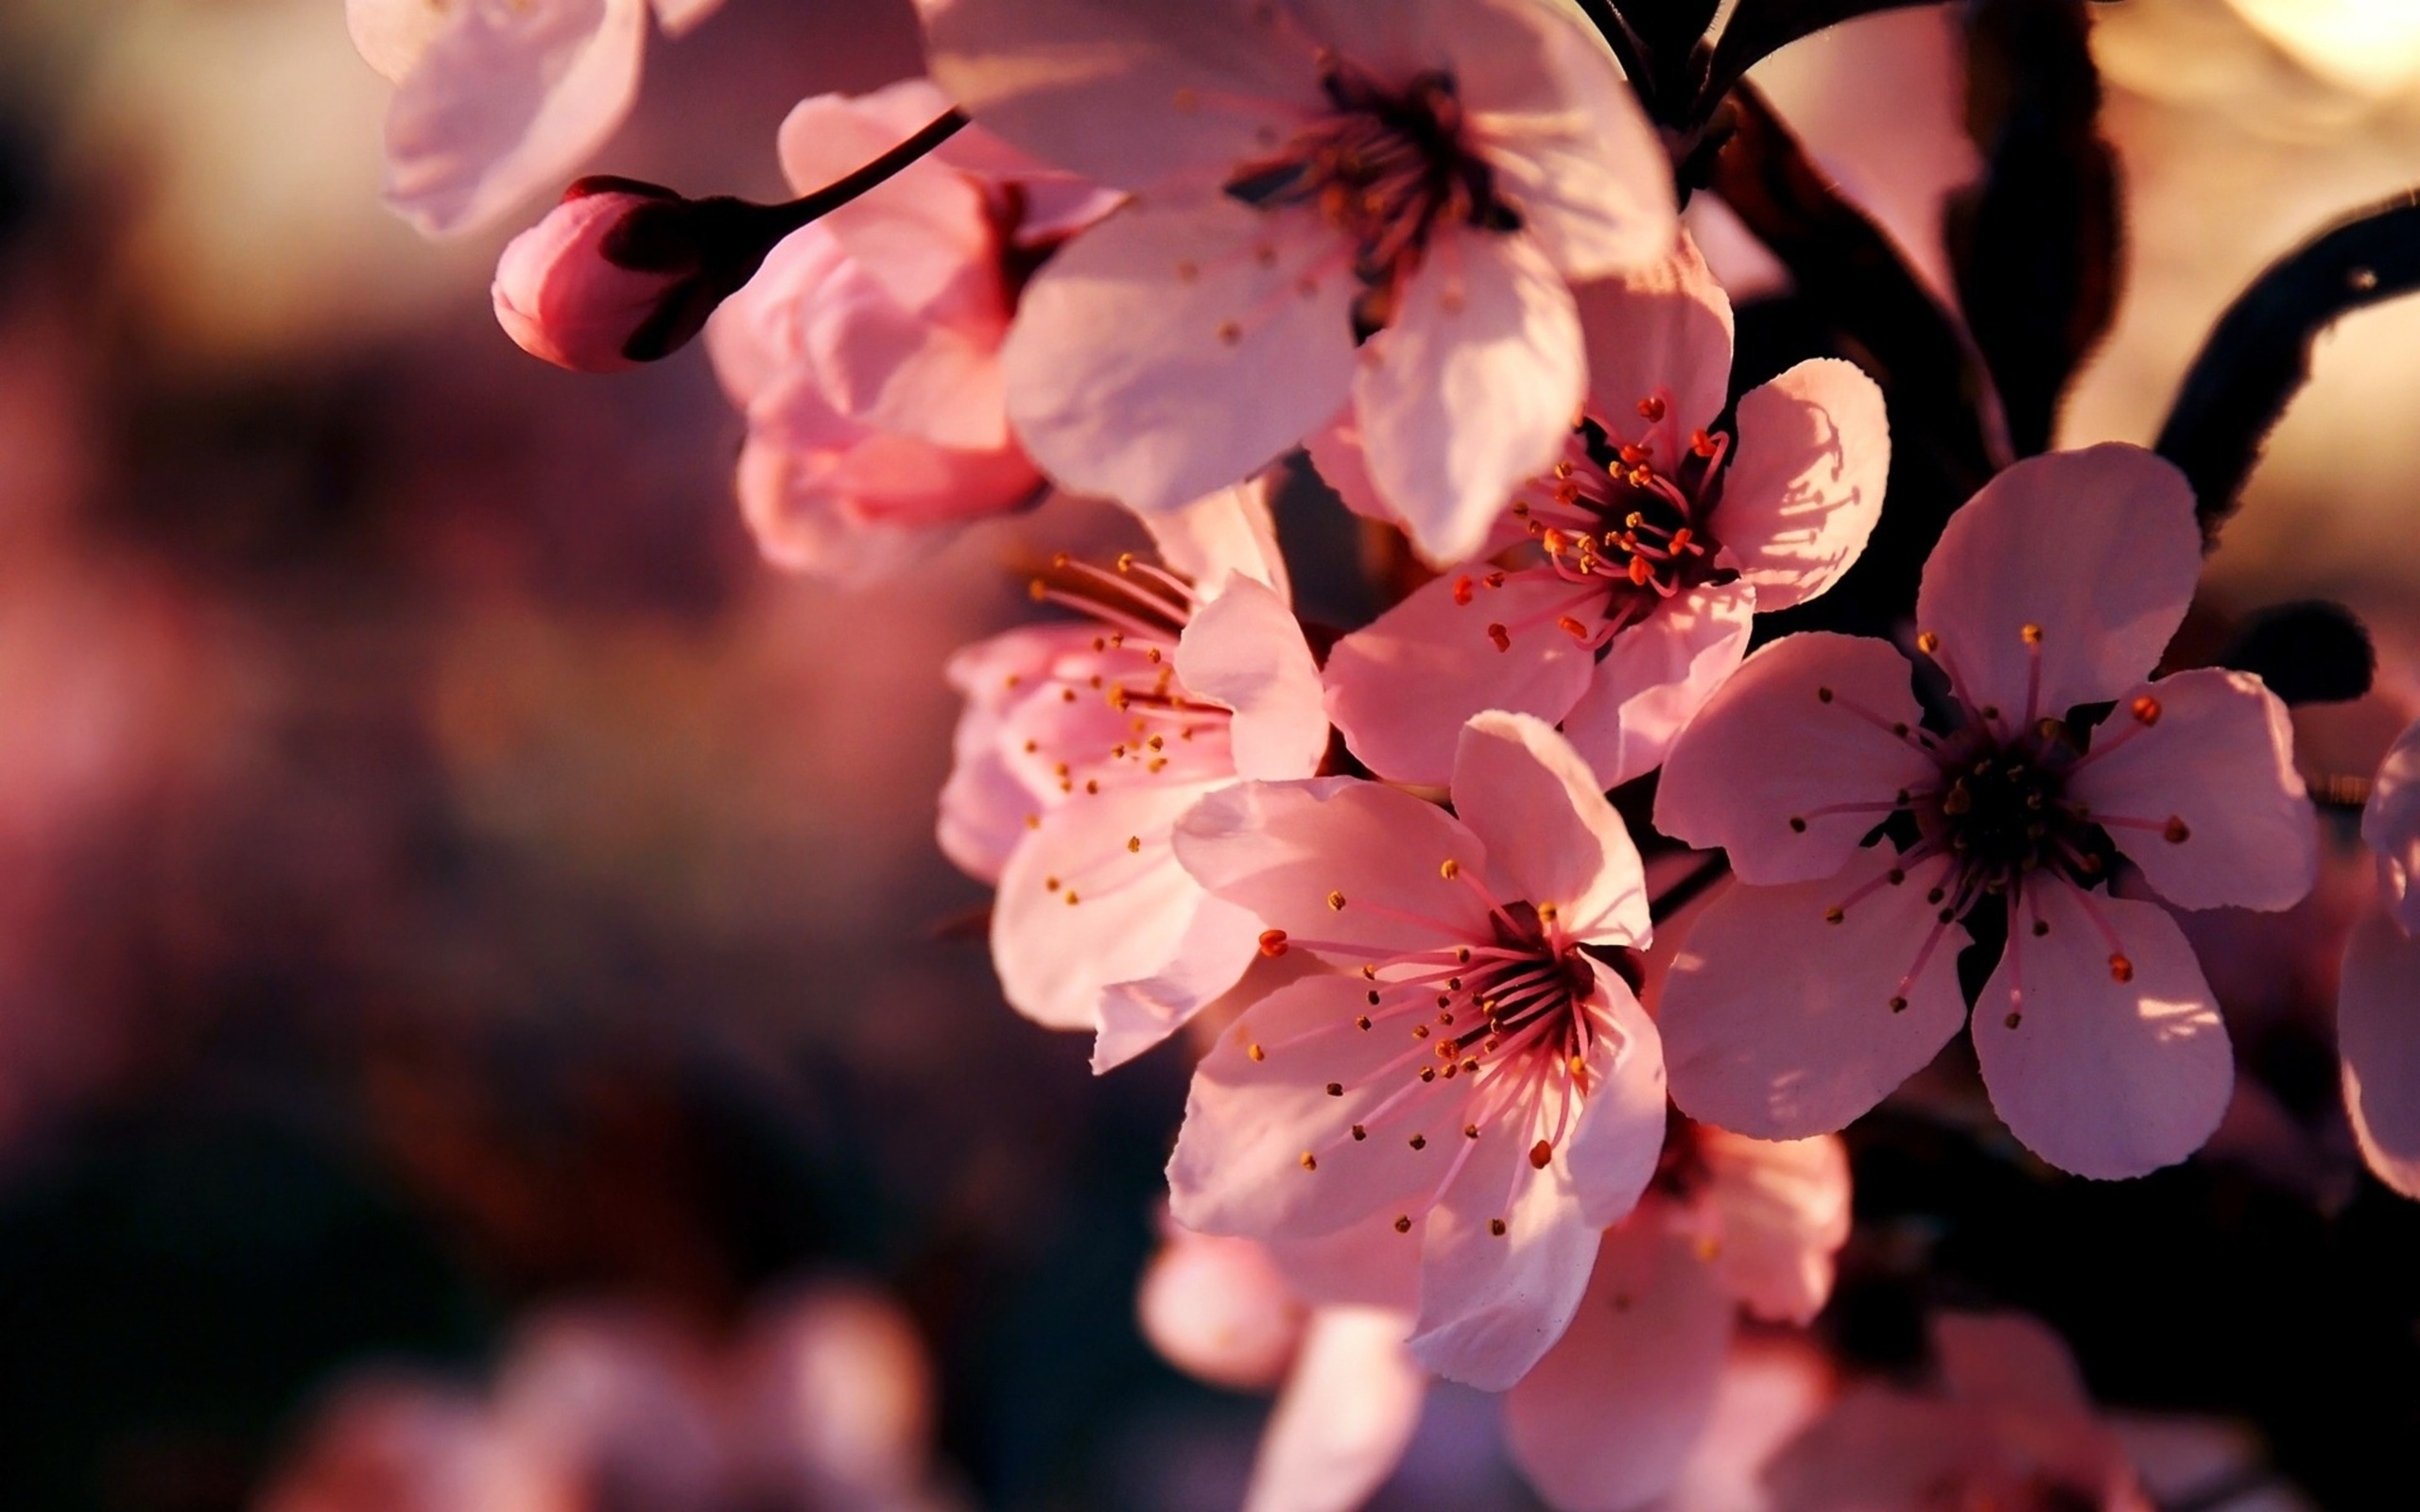 Заставка на телефон для женщин природа. Цветы Сакуры. Цветы вишни. Весенние картинки на рабочий стол. Красивые весенние цветы.